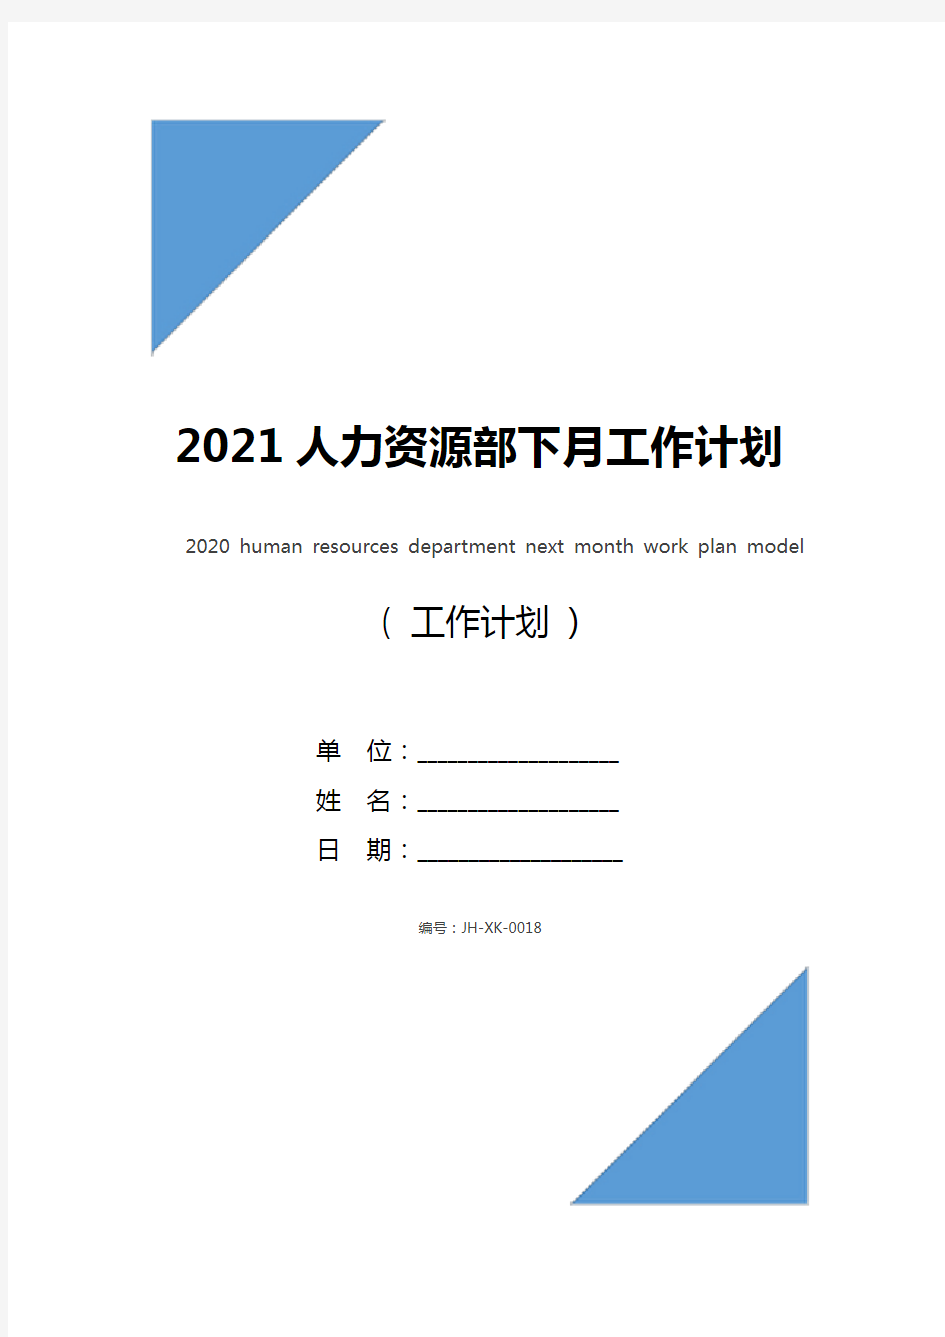 2021人力资源部下月工作计划范文(最新版)